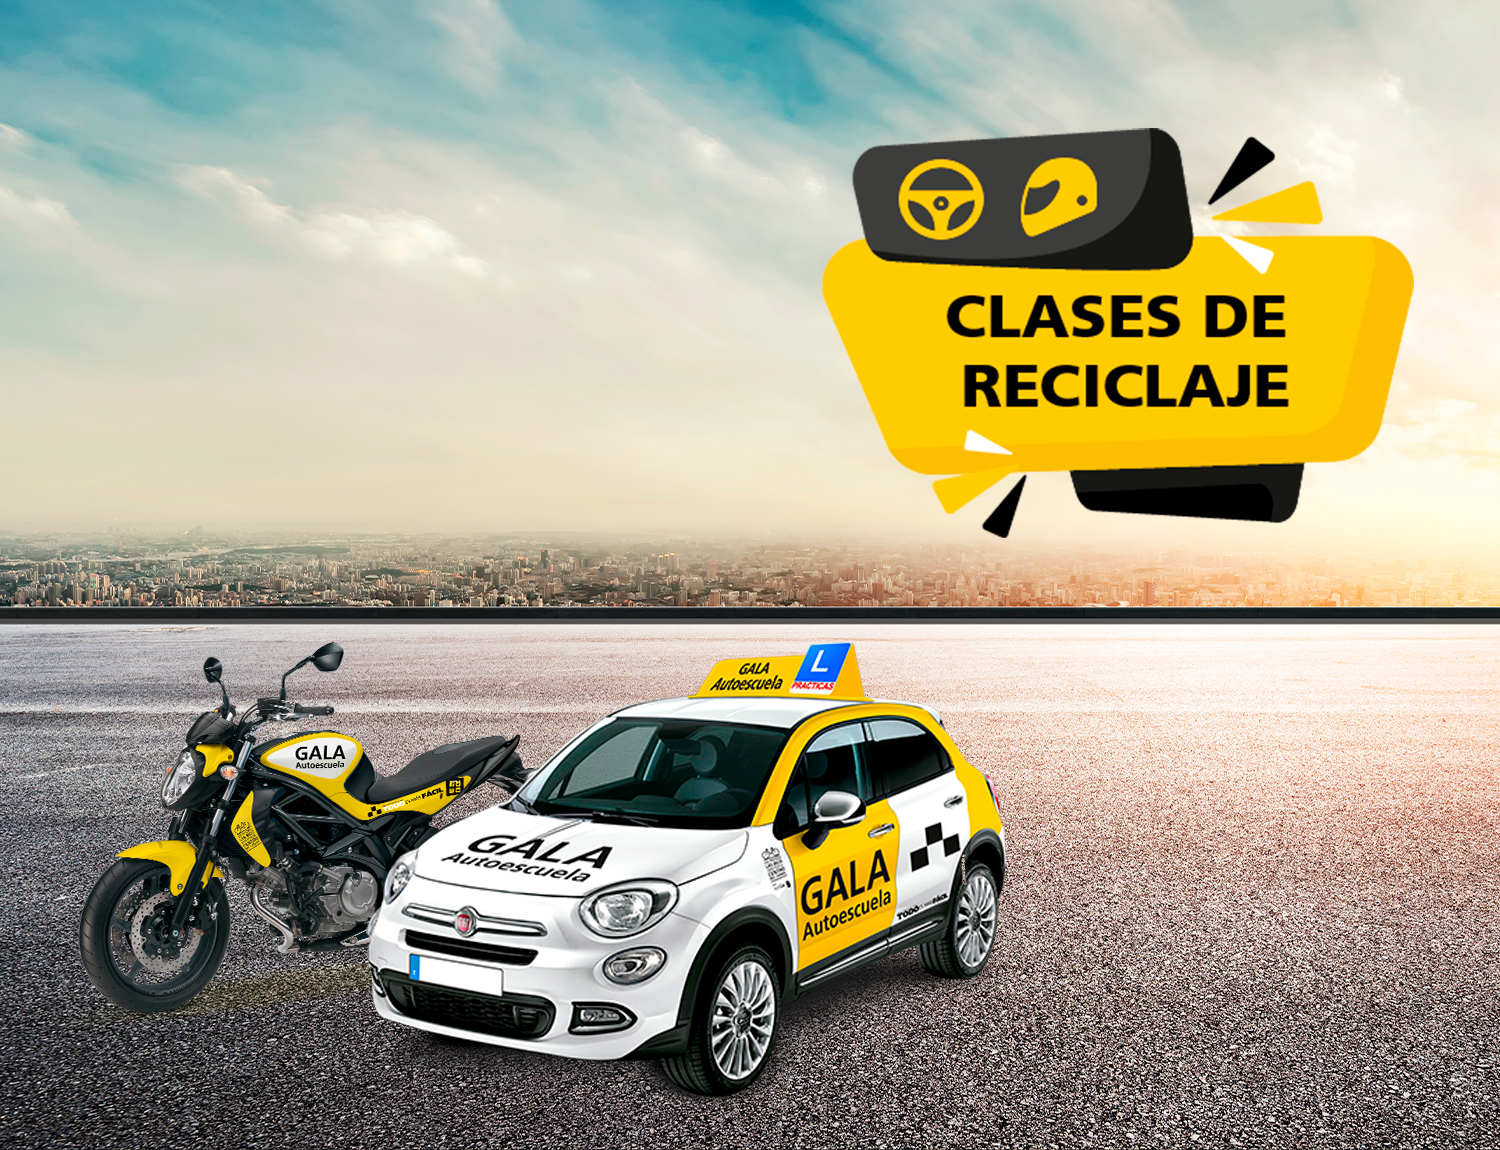 Clases-reciclaje-moto-coche-autoescuela-gala